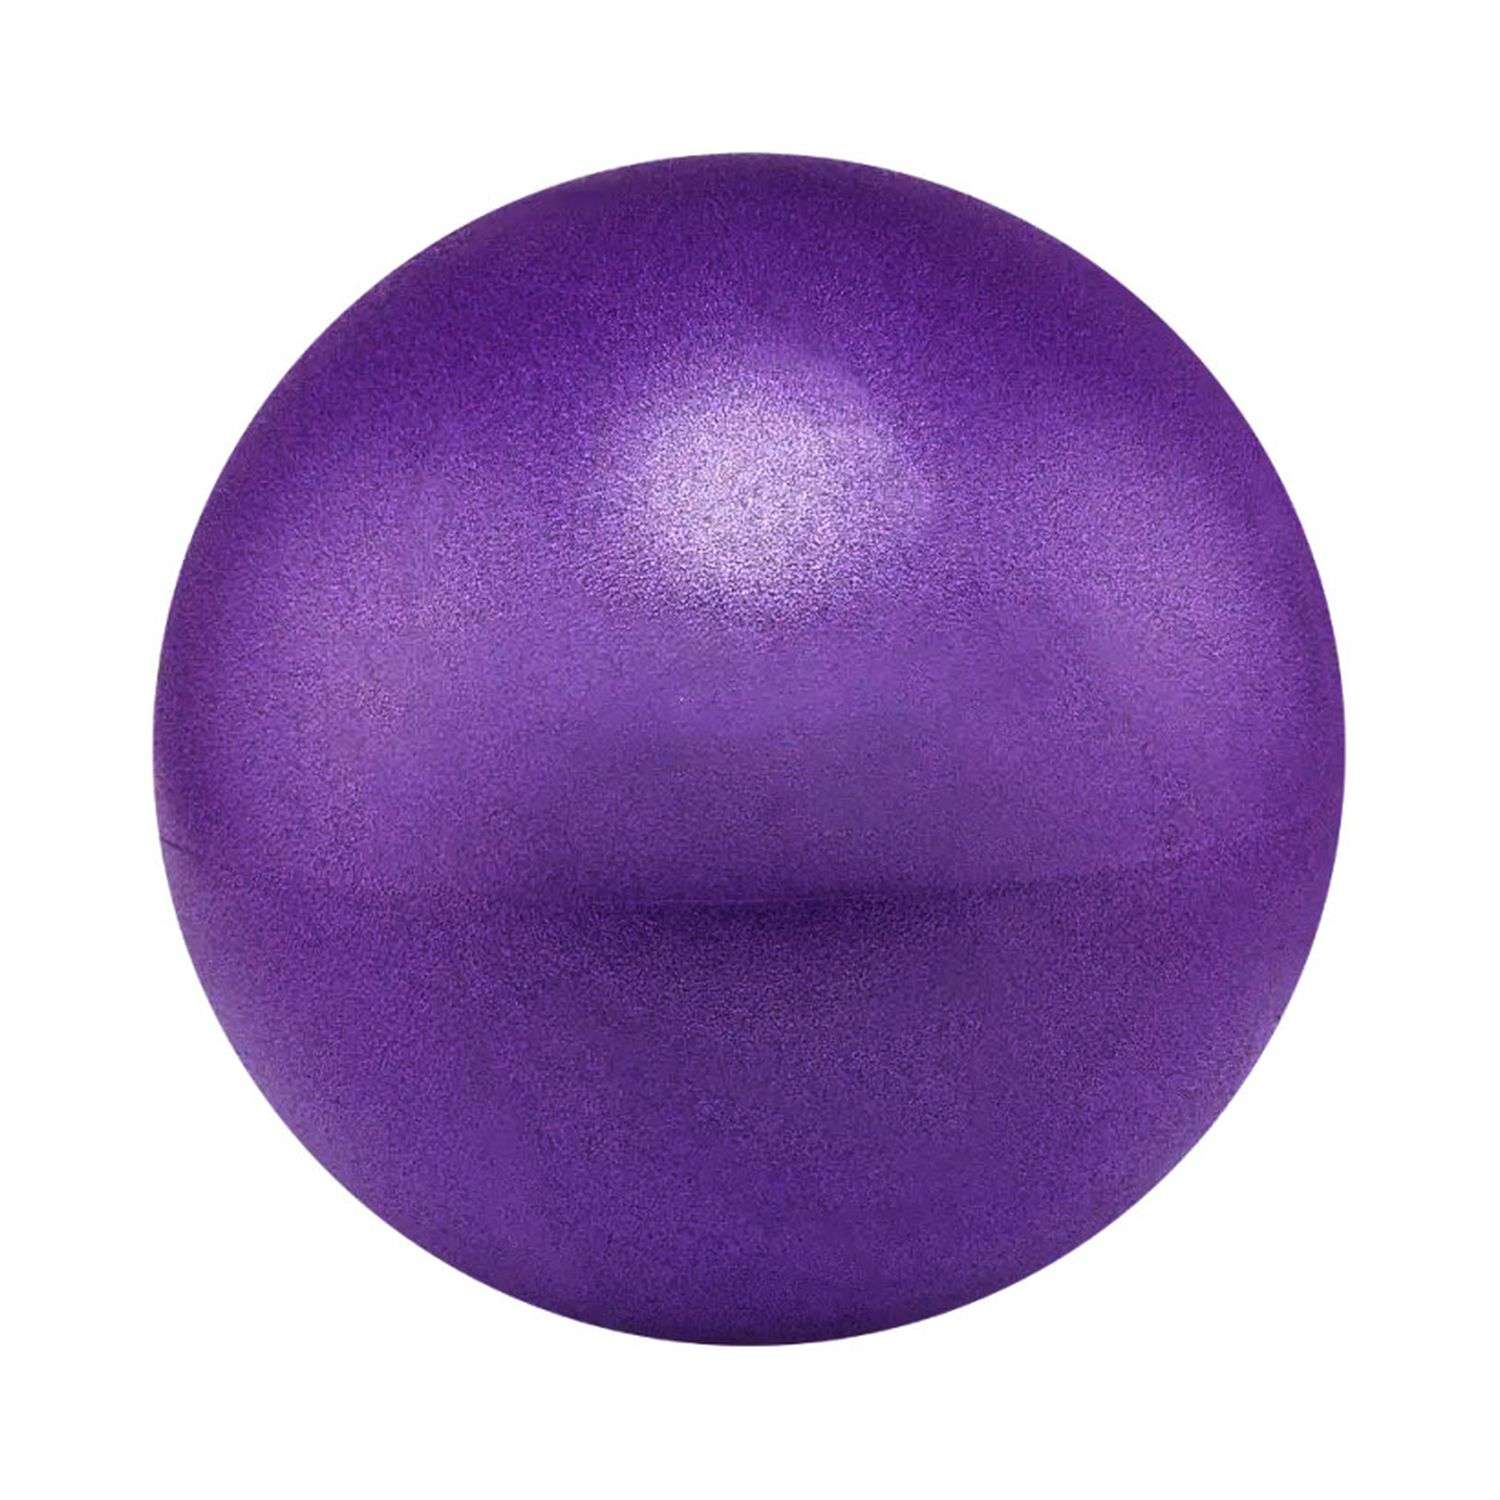 Мяч для йоги и пилатеса Beroma с антивзрывным эффектом 20 см фиолетовый - фото 1